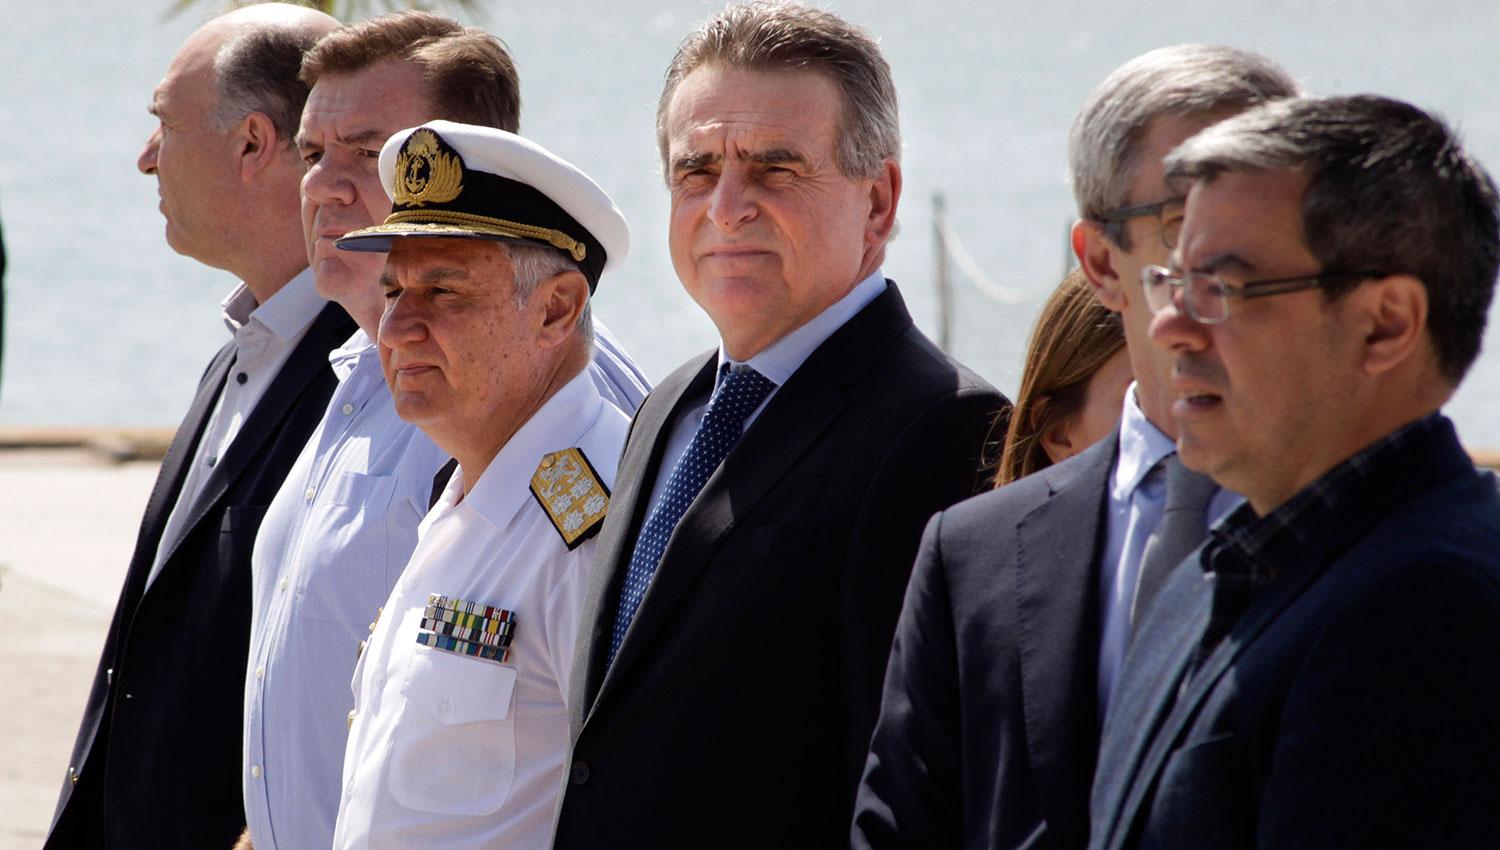 El Gobierno evalúa comprar otro submarino, tras la tragedia del ARA San Juan